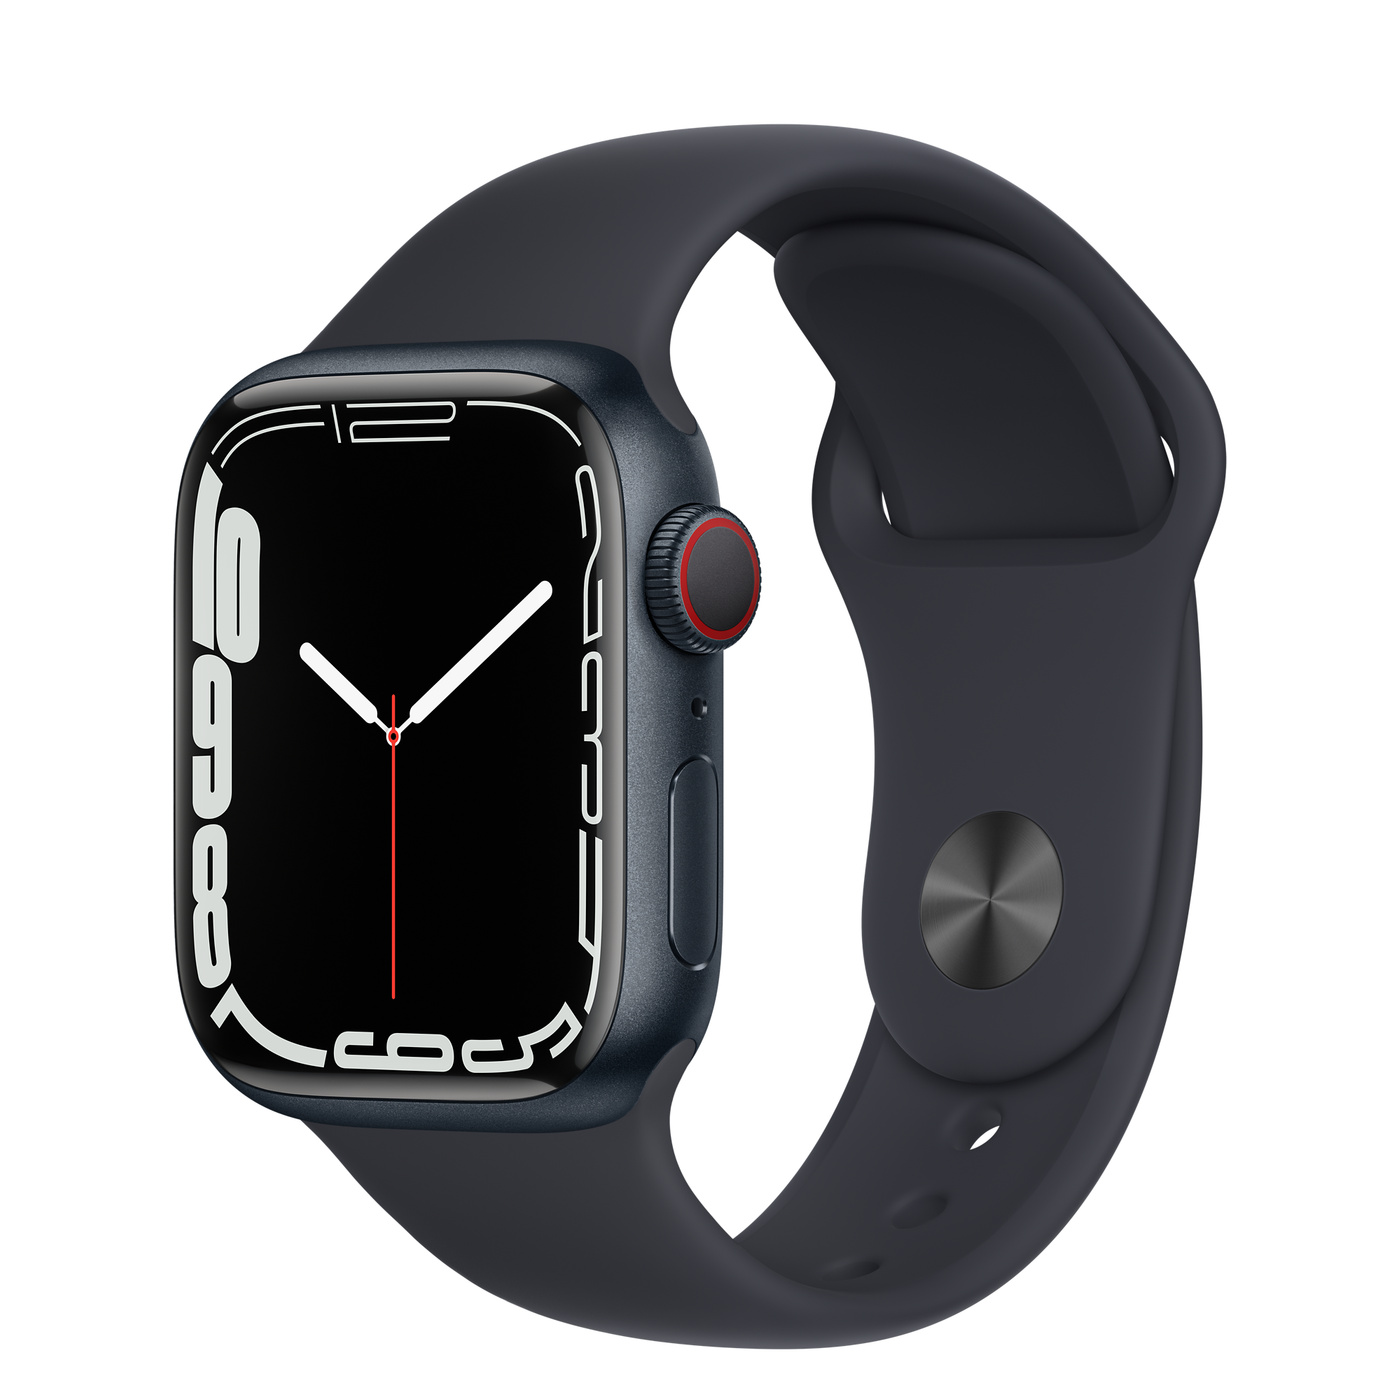  Apple Watch 7 me një teknologji të re të ekranit